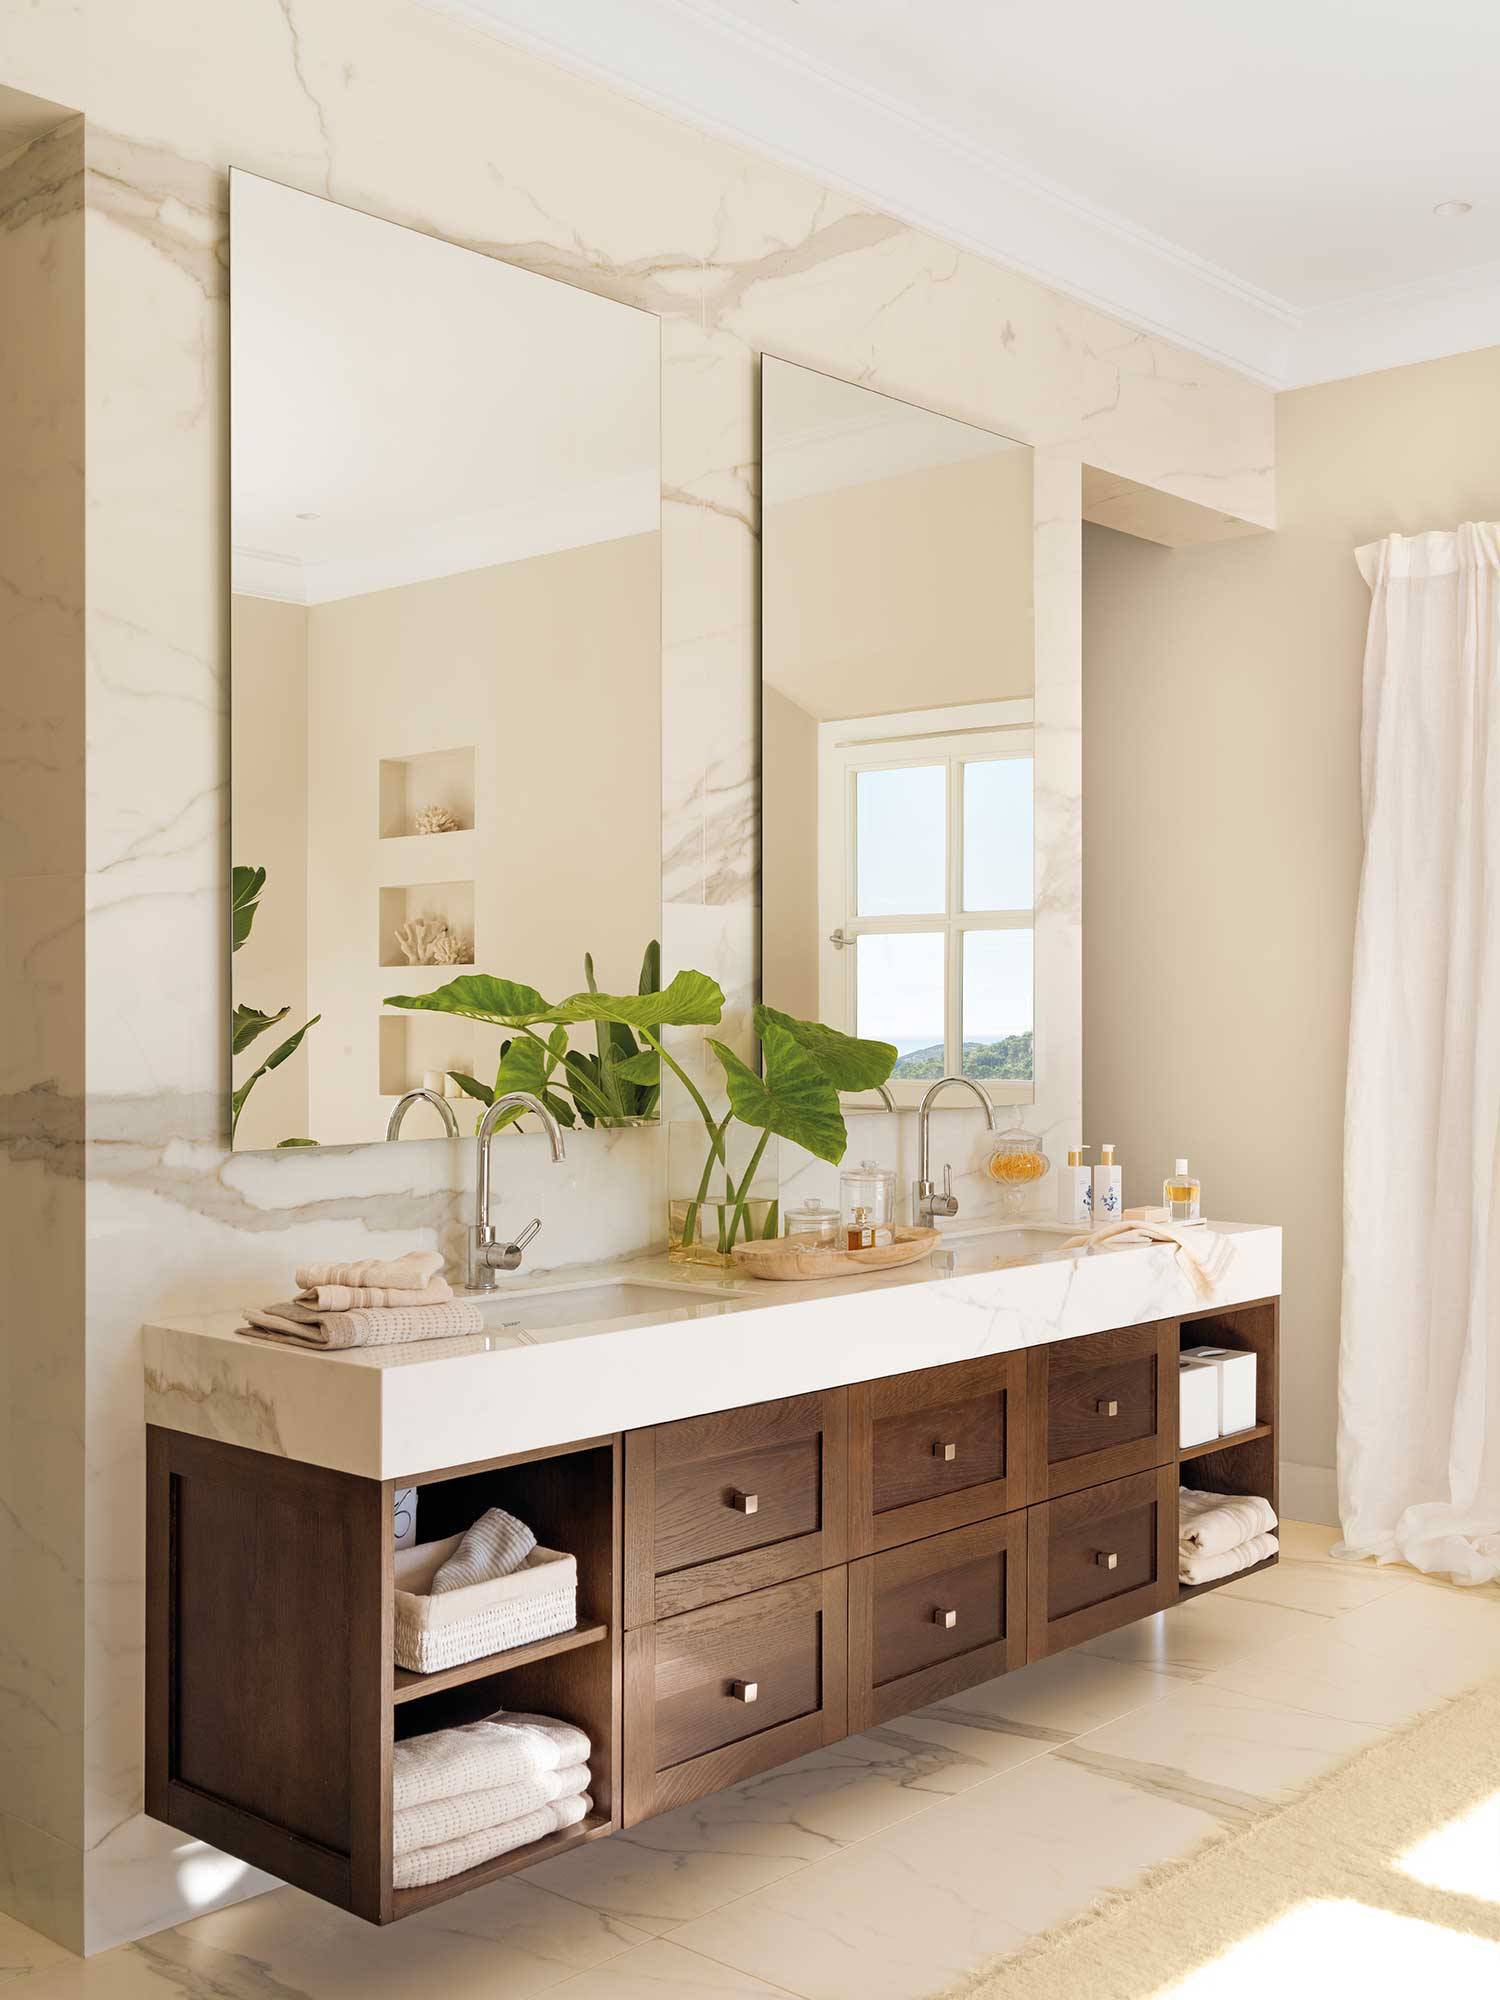 Baño elegante en mármol con gran mueble de madera.